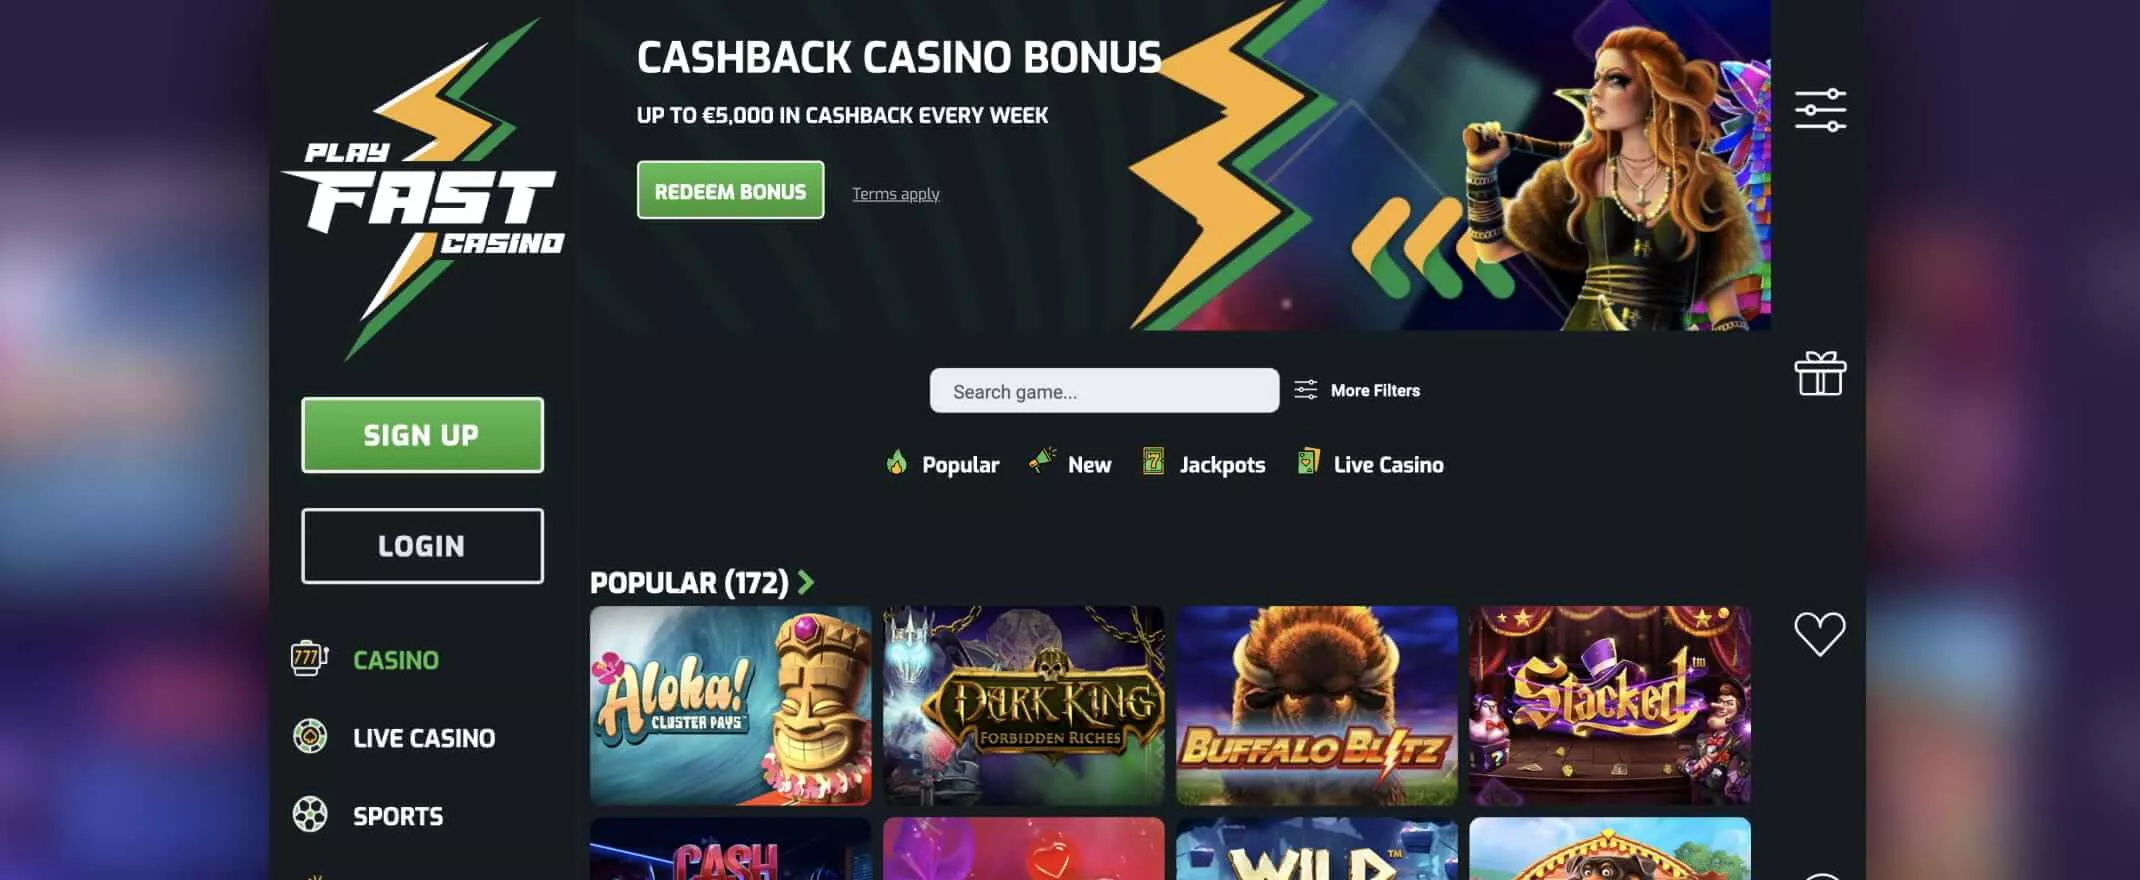 playfast casino homepage